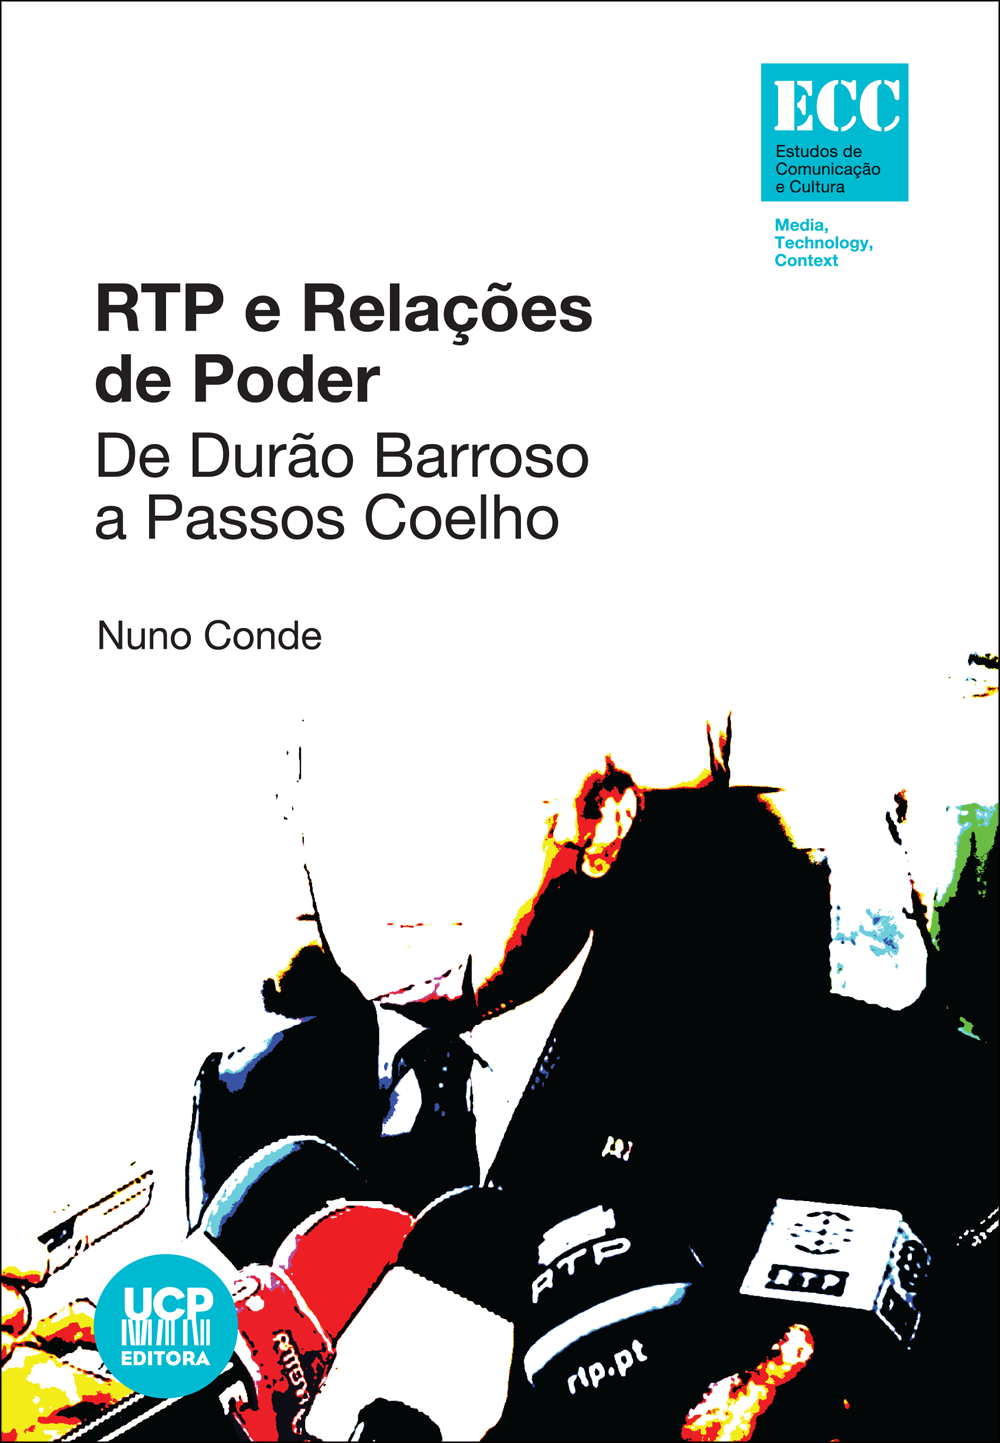 RTP E RELAÇÕES DE PODER - 
De Durão Barroso a Passos Coelho